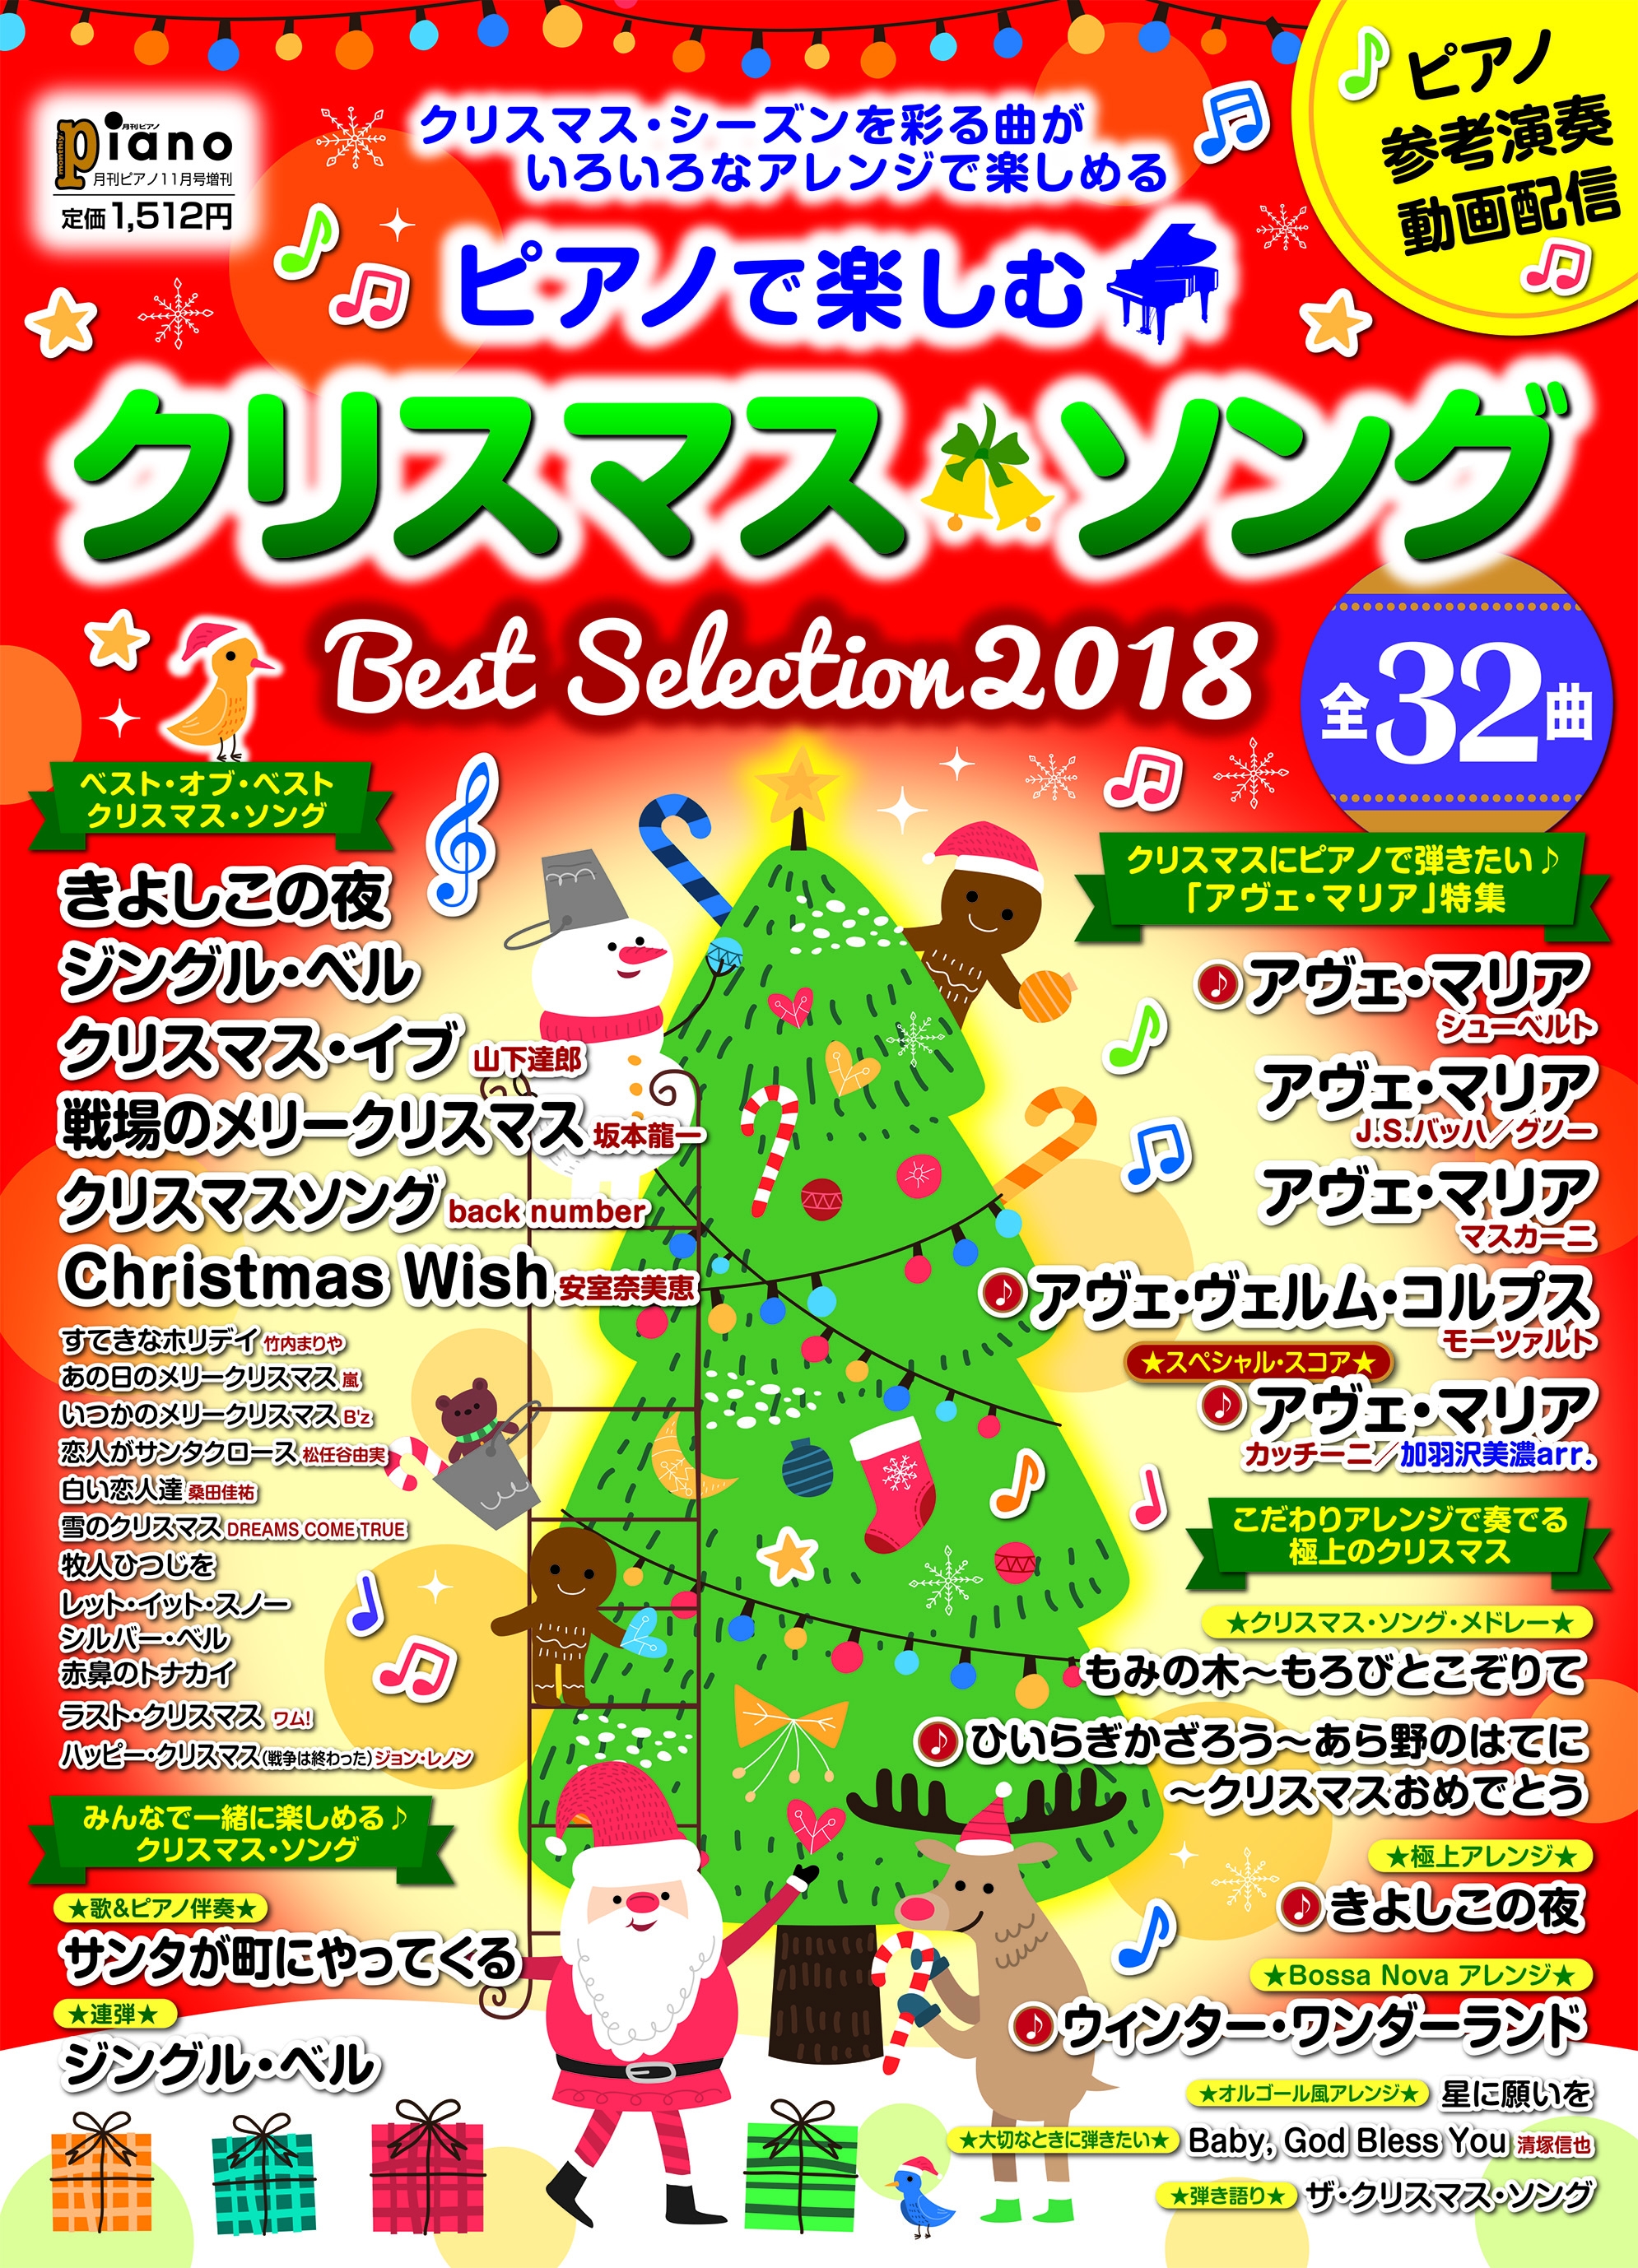 ピアノで楽しむ クリスマス ソング Best Selection18 10月18日発売 ヤマハミュージックエンタテインメントホールディングスのプレスリリース